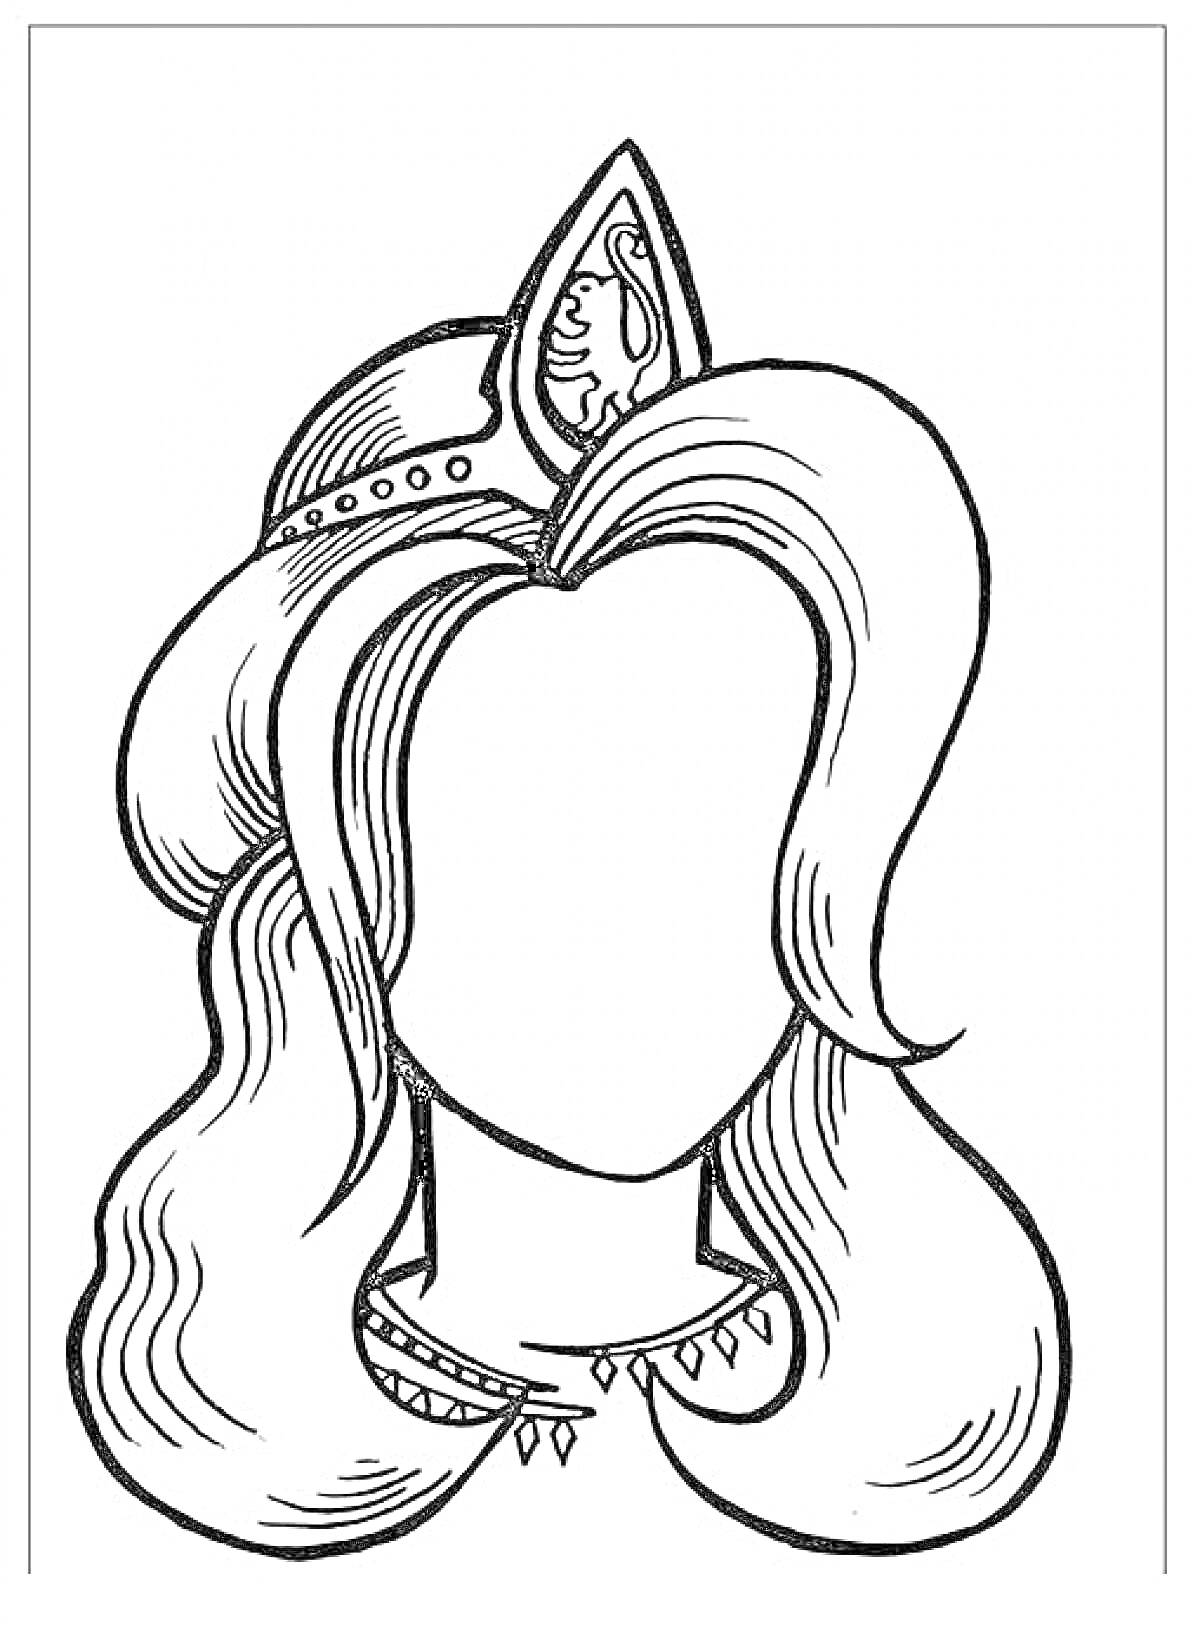 Раскраска Портрет мамы с длинными волосами и короной